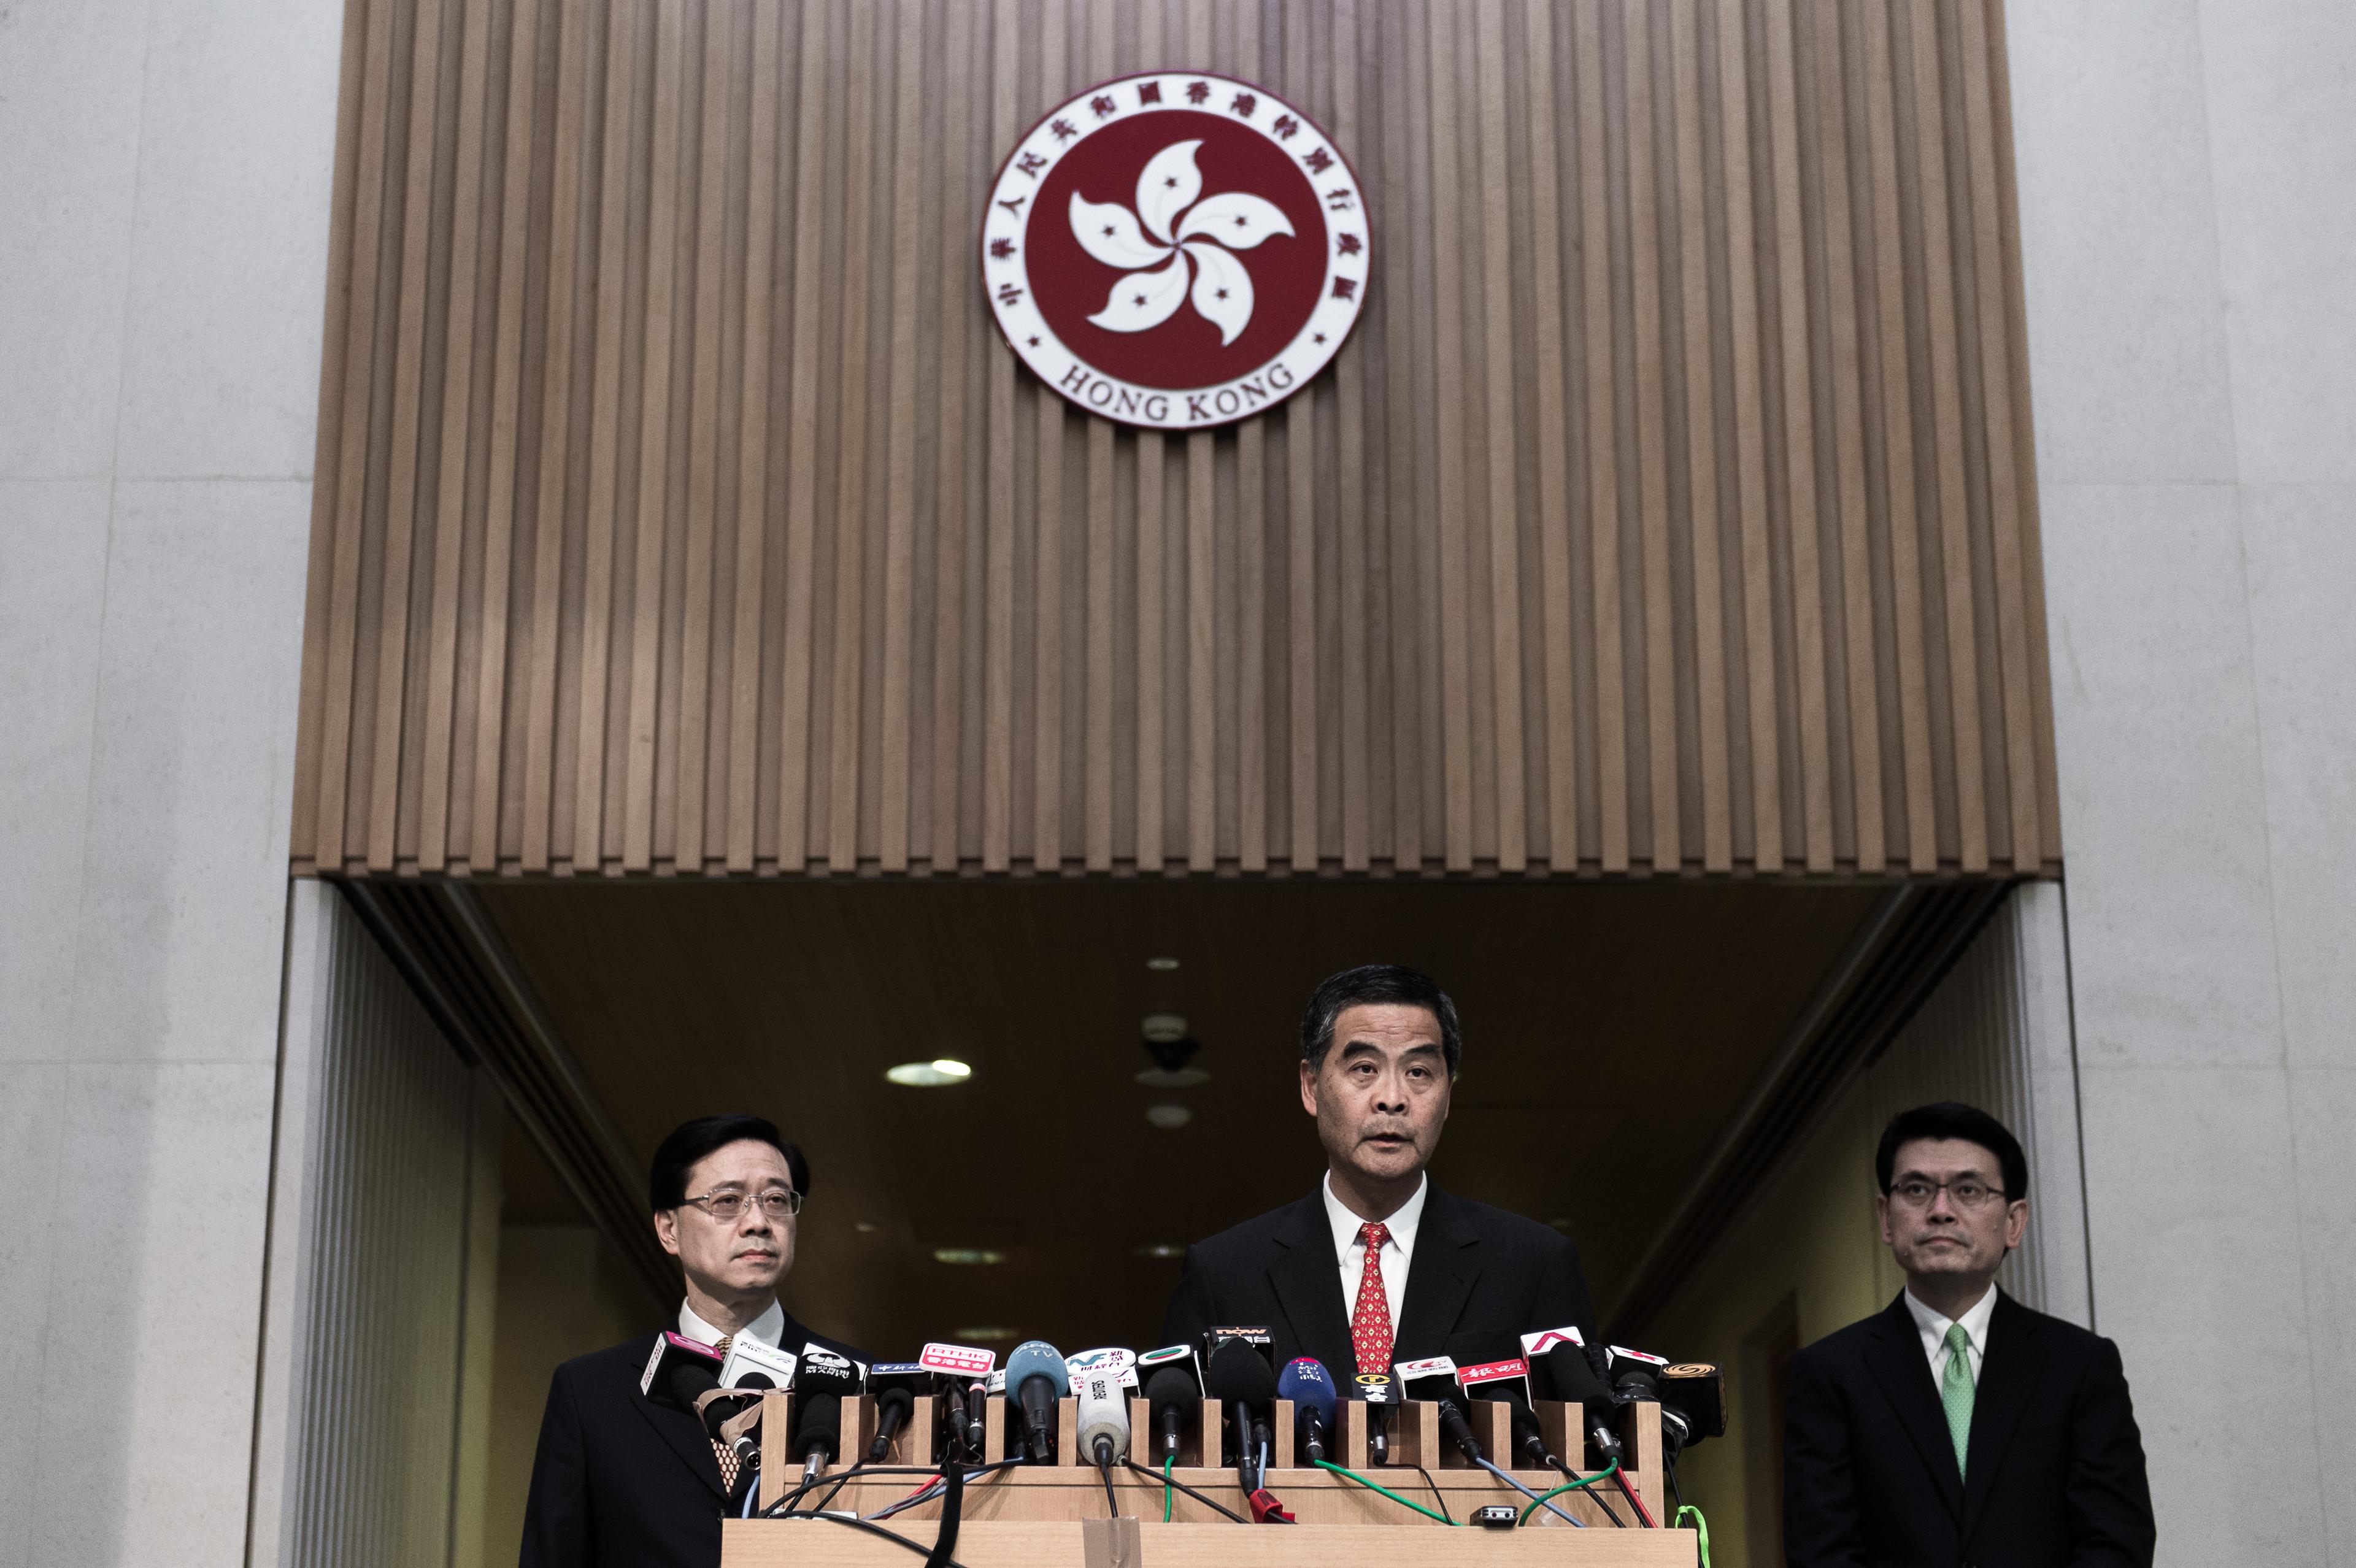 Hongkongs regeringschef Leung Chun-ying svarar på frågor under en presskonferens i Hongkong den 4 januari 2016. Hongkongs ledare sade att han var "mycket oroad" över försvinnandet av fem personer med koppling till en bokhandel som är känd för publikationer kritiska mot den kinesiska regeringen. Männen befaras ha gripits av kinesiska myndigheter, och deras försvinnanden har väckt ilska hos lagstiftare och aktivister i Hong Kong.  (Foto:  Philippe Lopez /AFP/Getty Images)